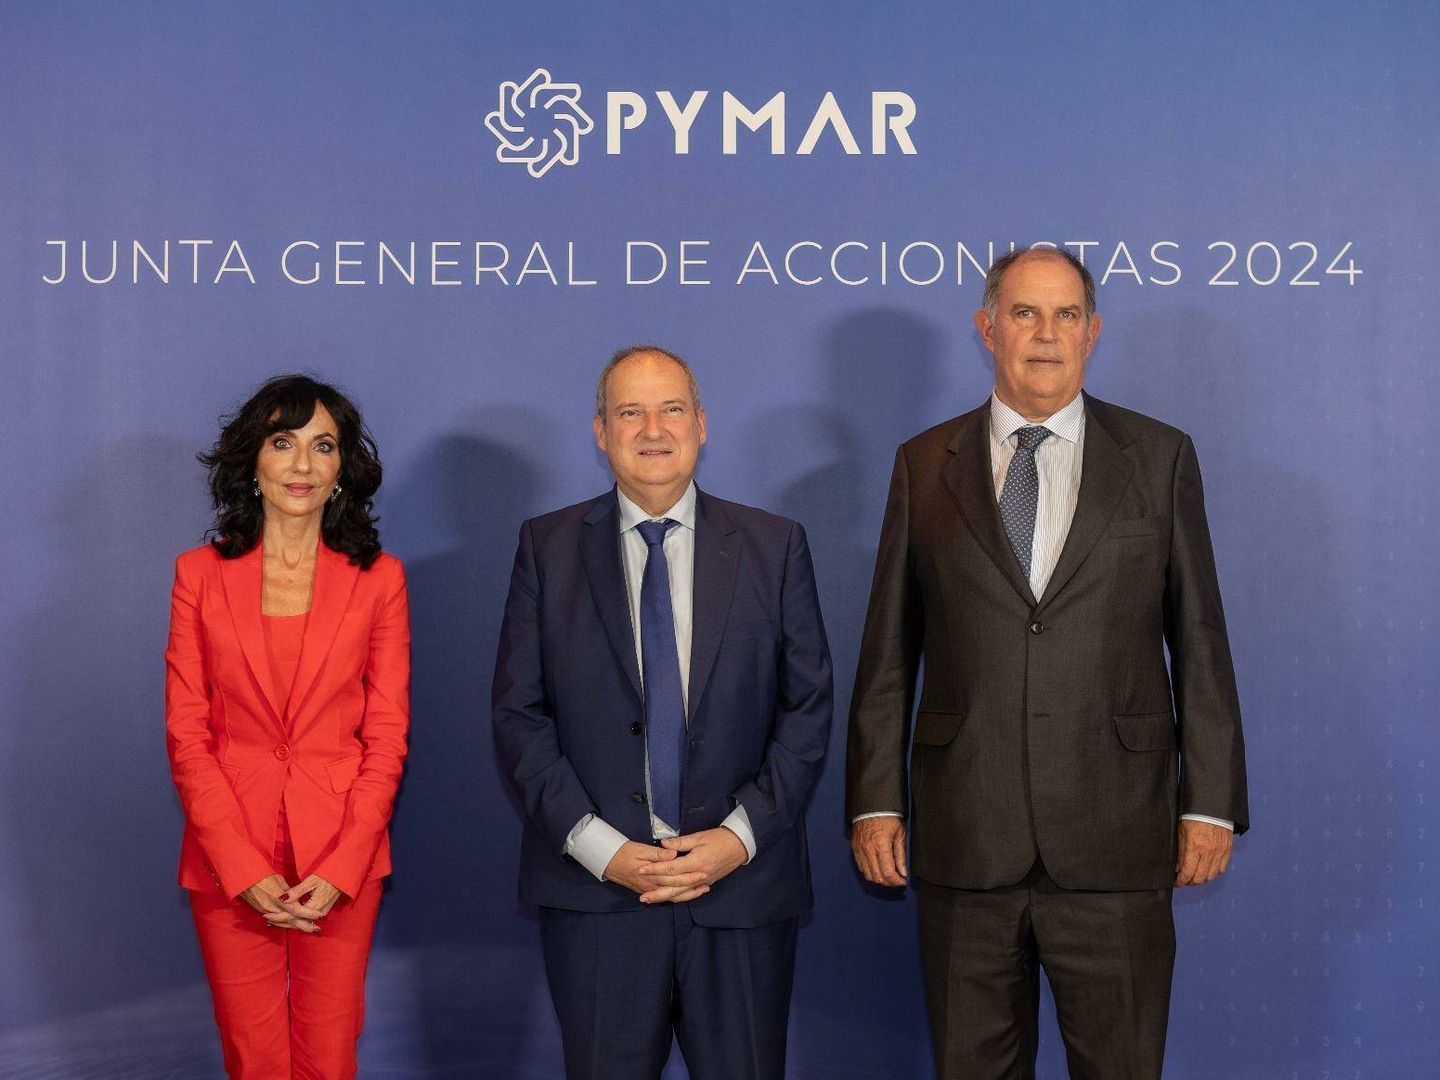 Junta general de accionistas de Pymar.